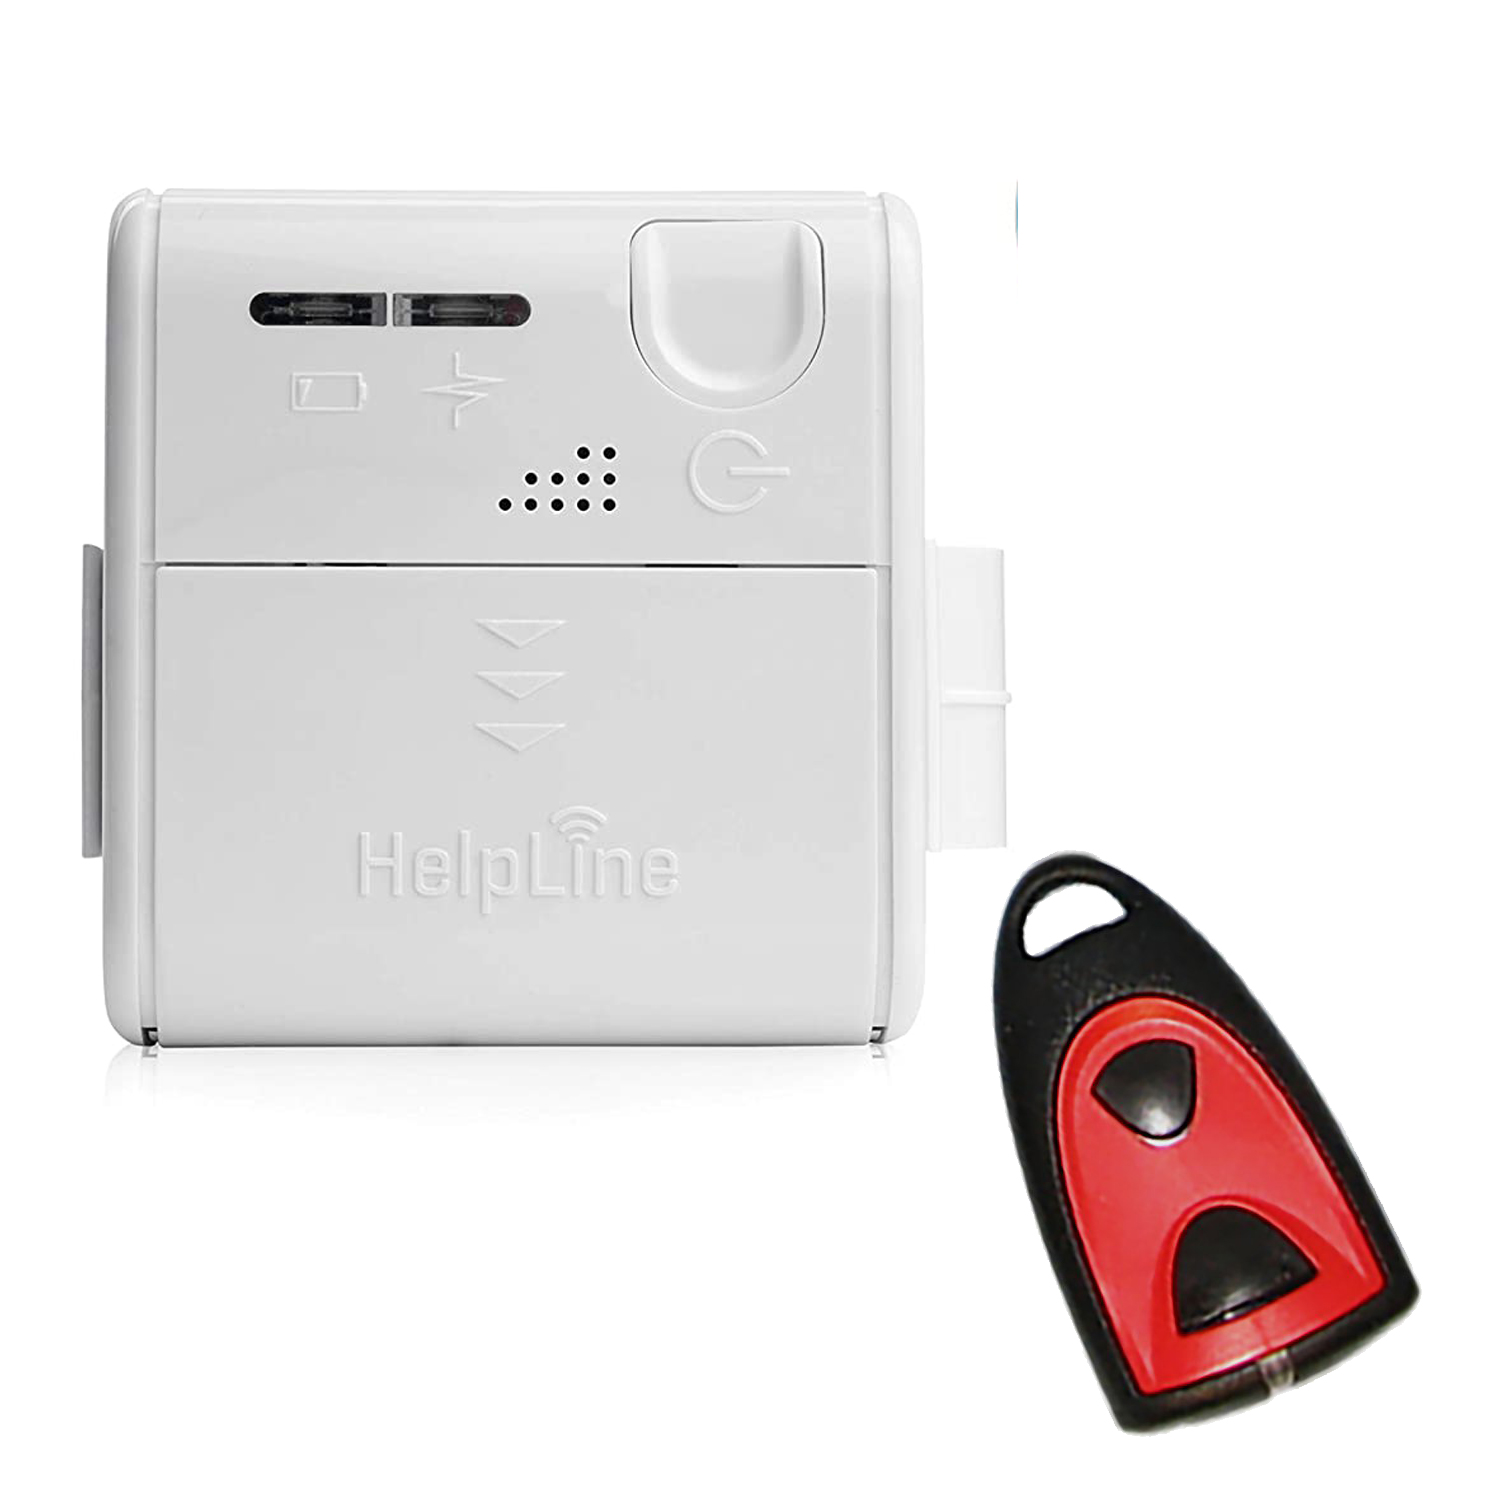 HelpLine Mini: Kleiner mobiler Hausnotruf mit Notruf-Halsbandsender